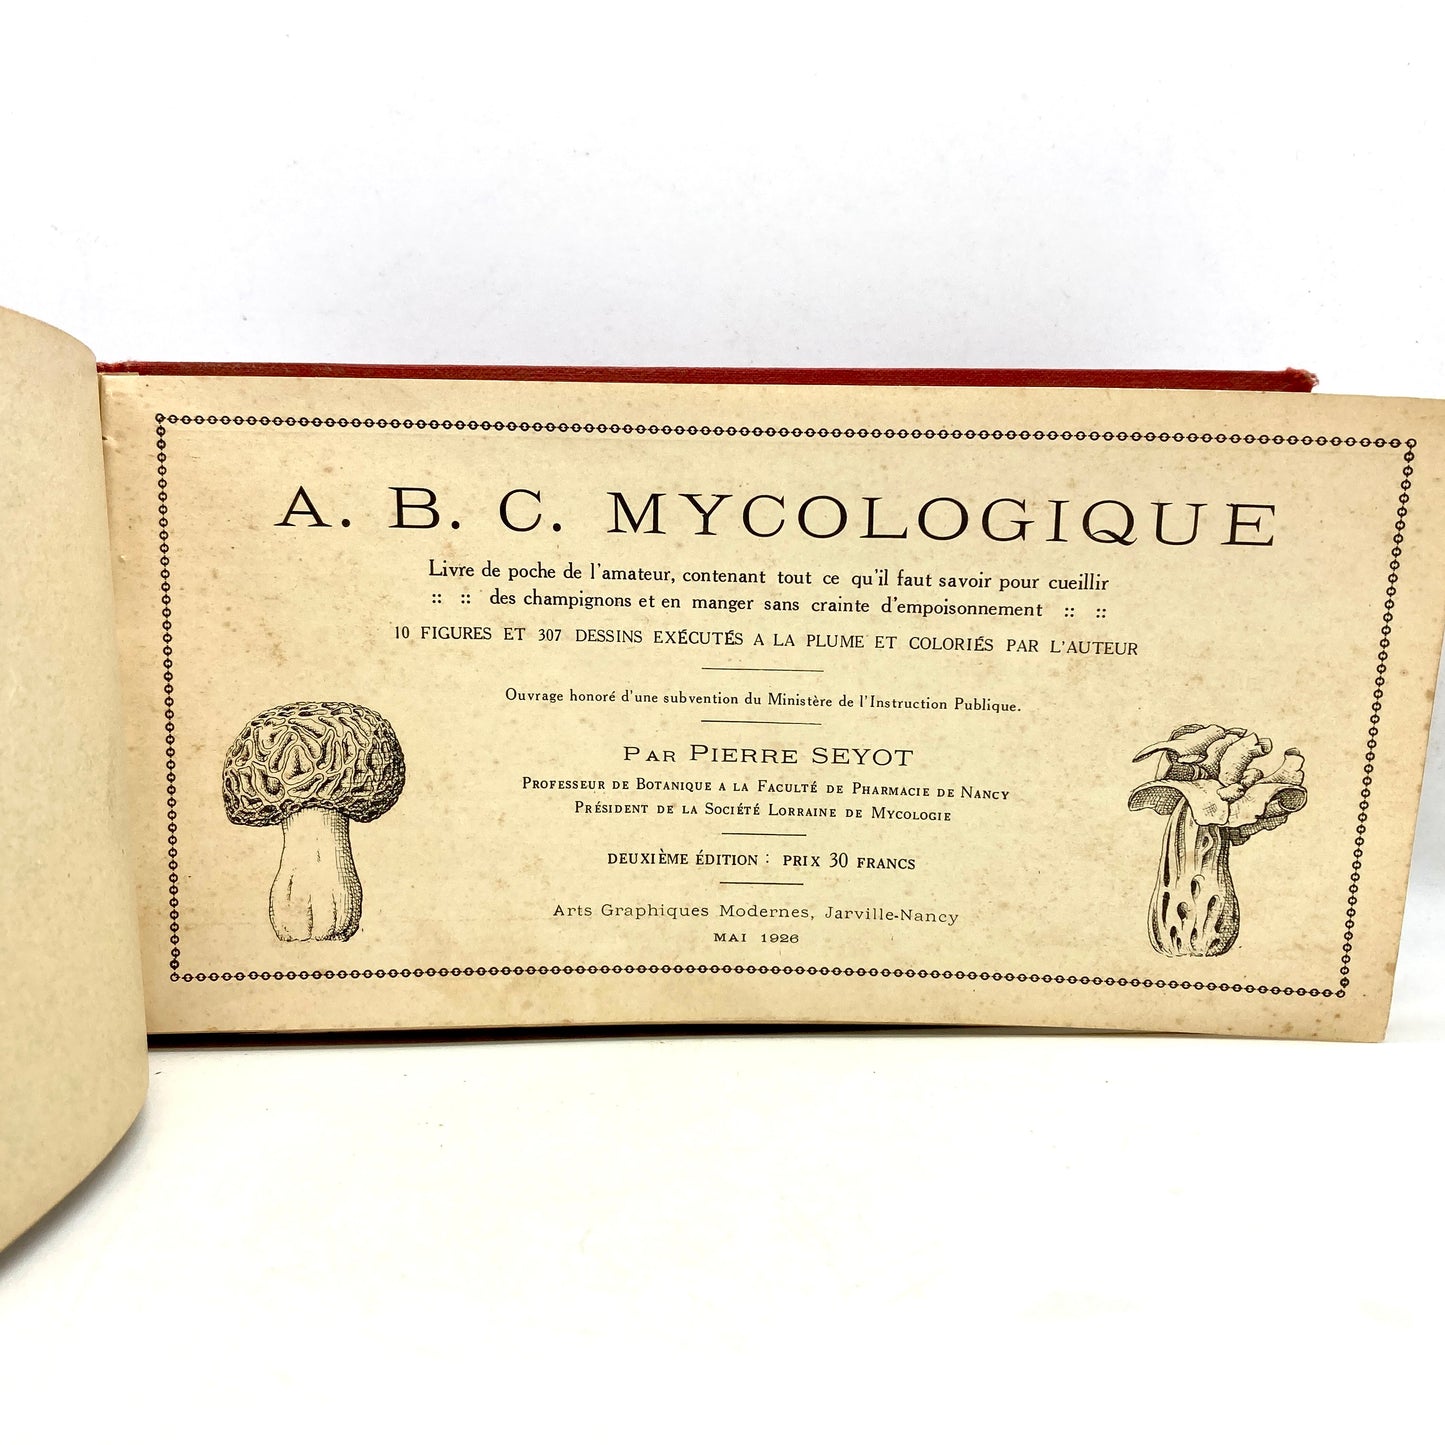 SEYOT, Pierre "A.B.C. Mycologique" [Arts Graphiques Modernes, 1926]